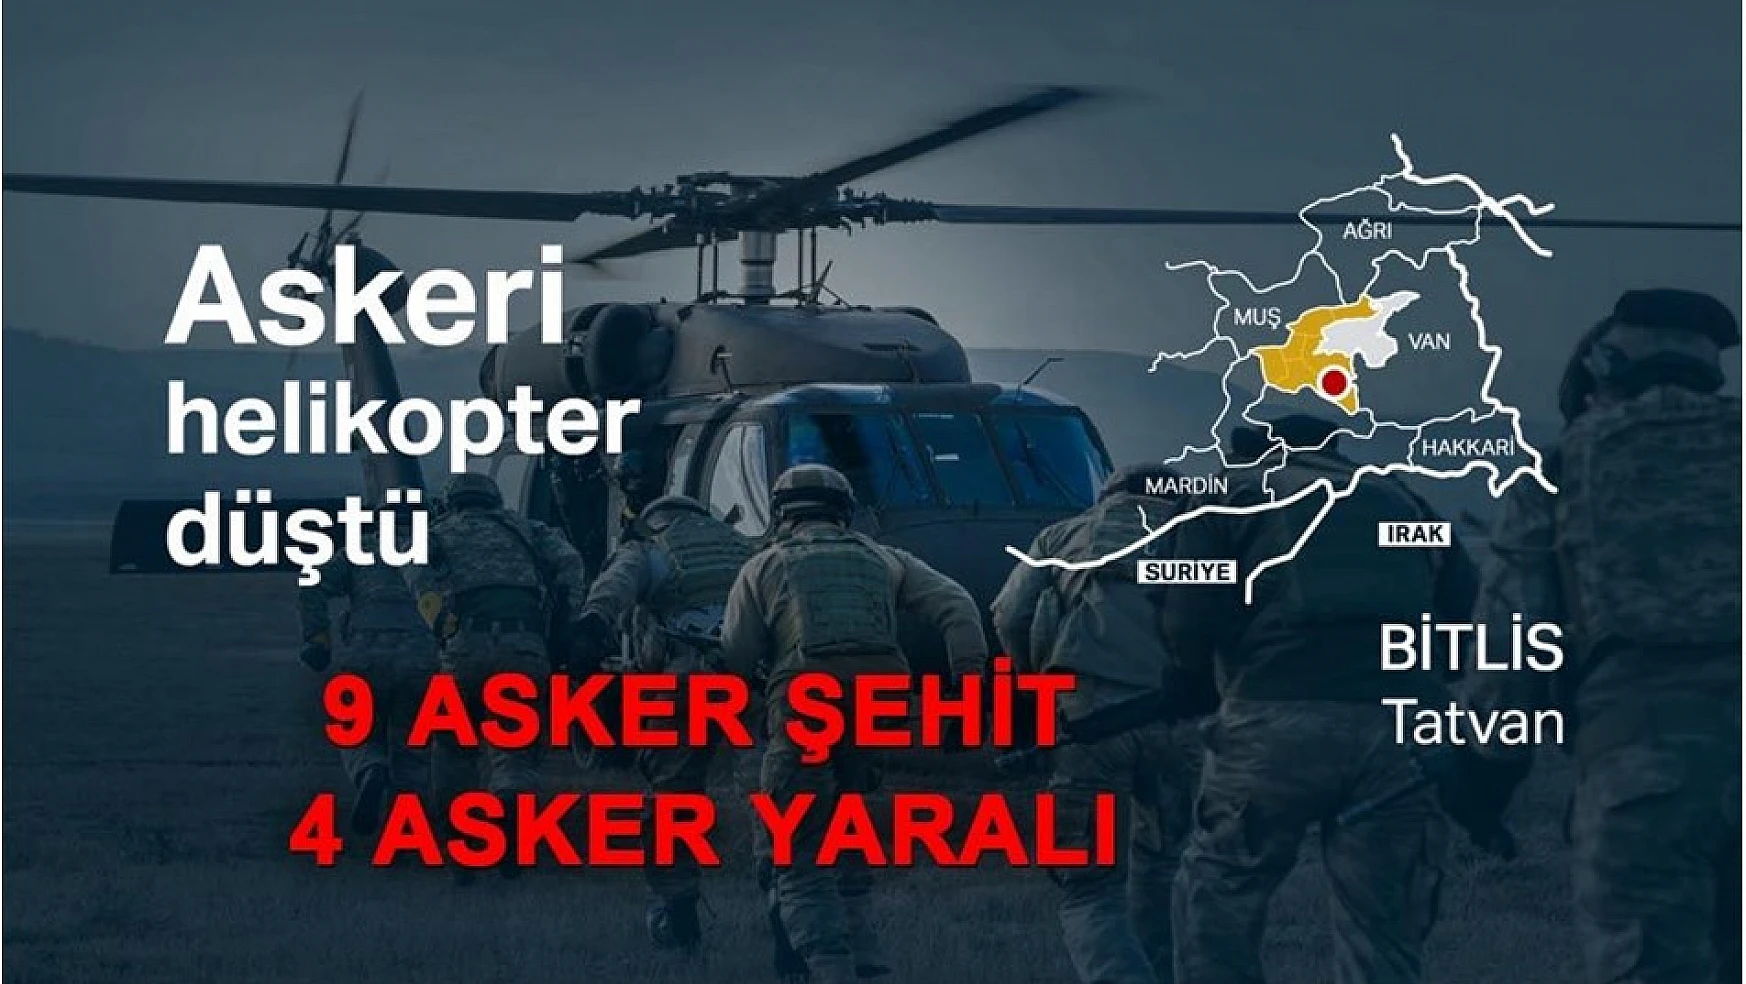 Bitlis'te askeri helikopter düştü: 9 askerimiz şehit, 4 yaralı